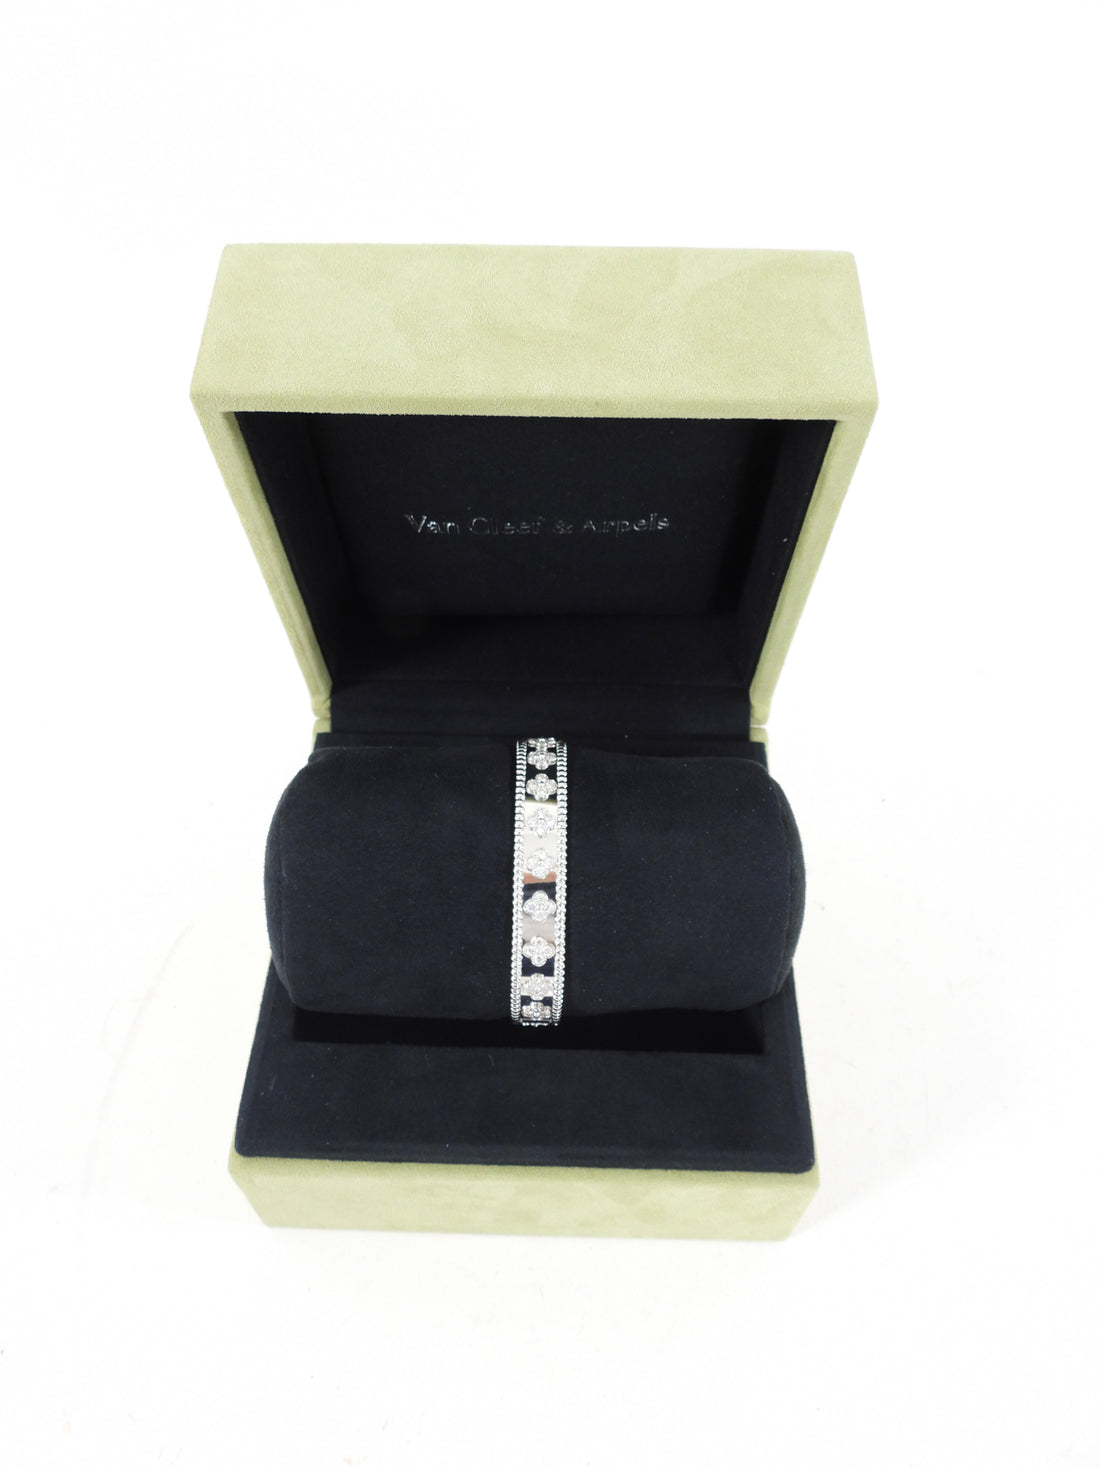 Van Cleef & Arpels 18k White Gold Diamond Perlee Clovers Bracelet